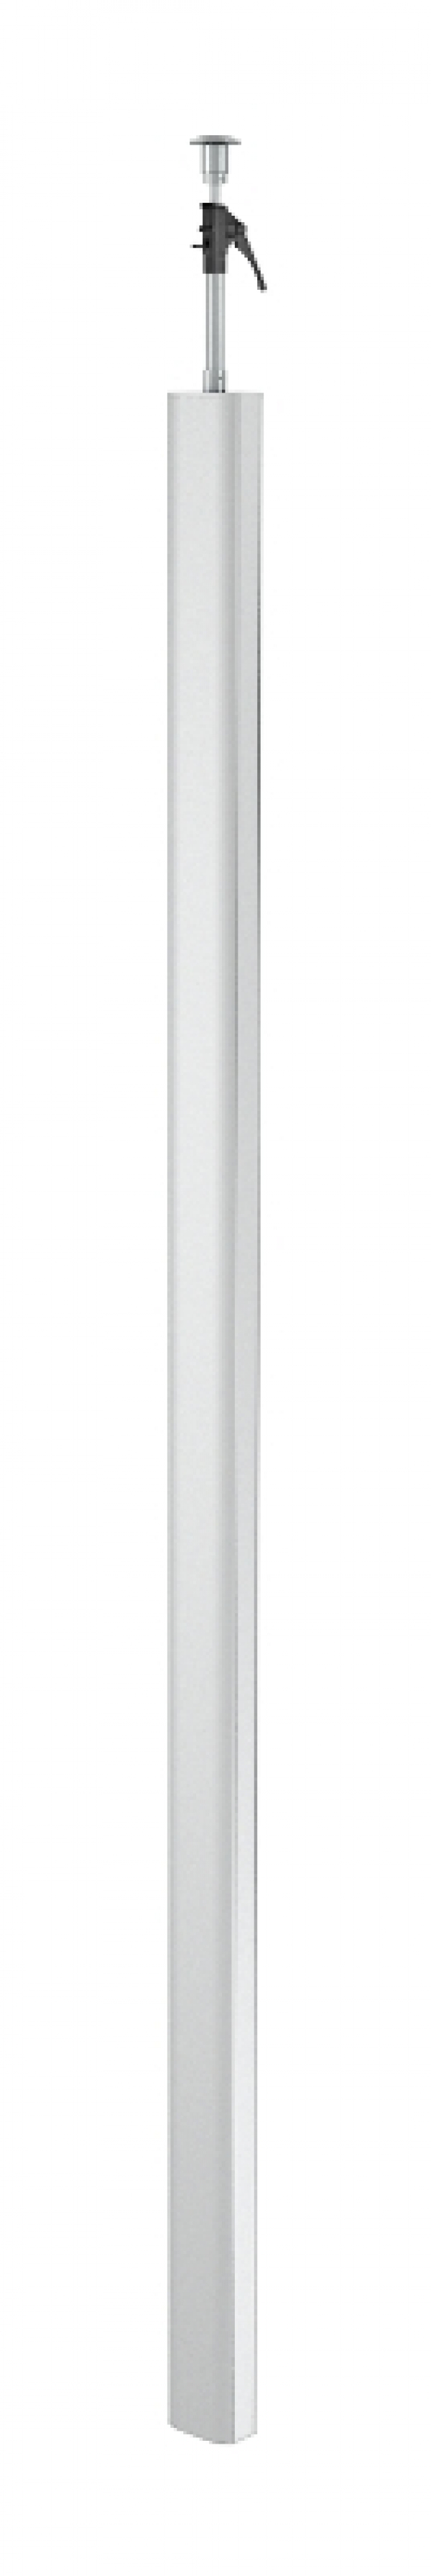 6289970 - OBO BETTERMANN Электромонтажная колонна 3,3-3,5 м 2-х сторонняя Modul45 80x130x3300 мм (алюминий,белый) (ISSDM45RW).